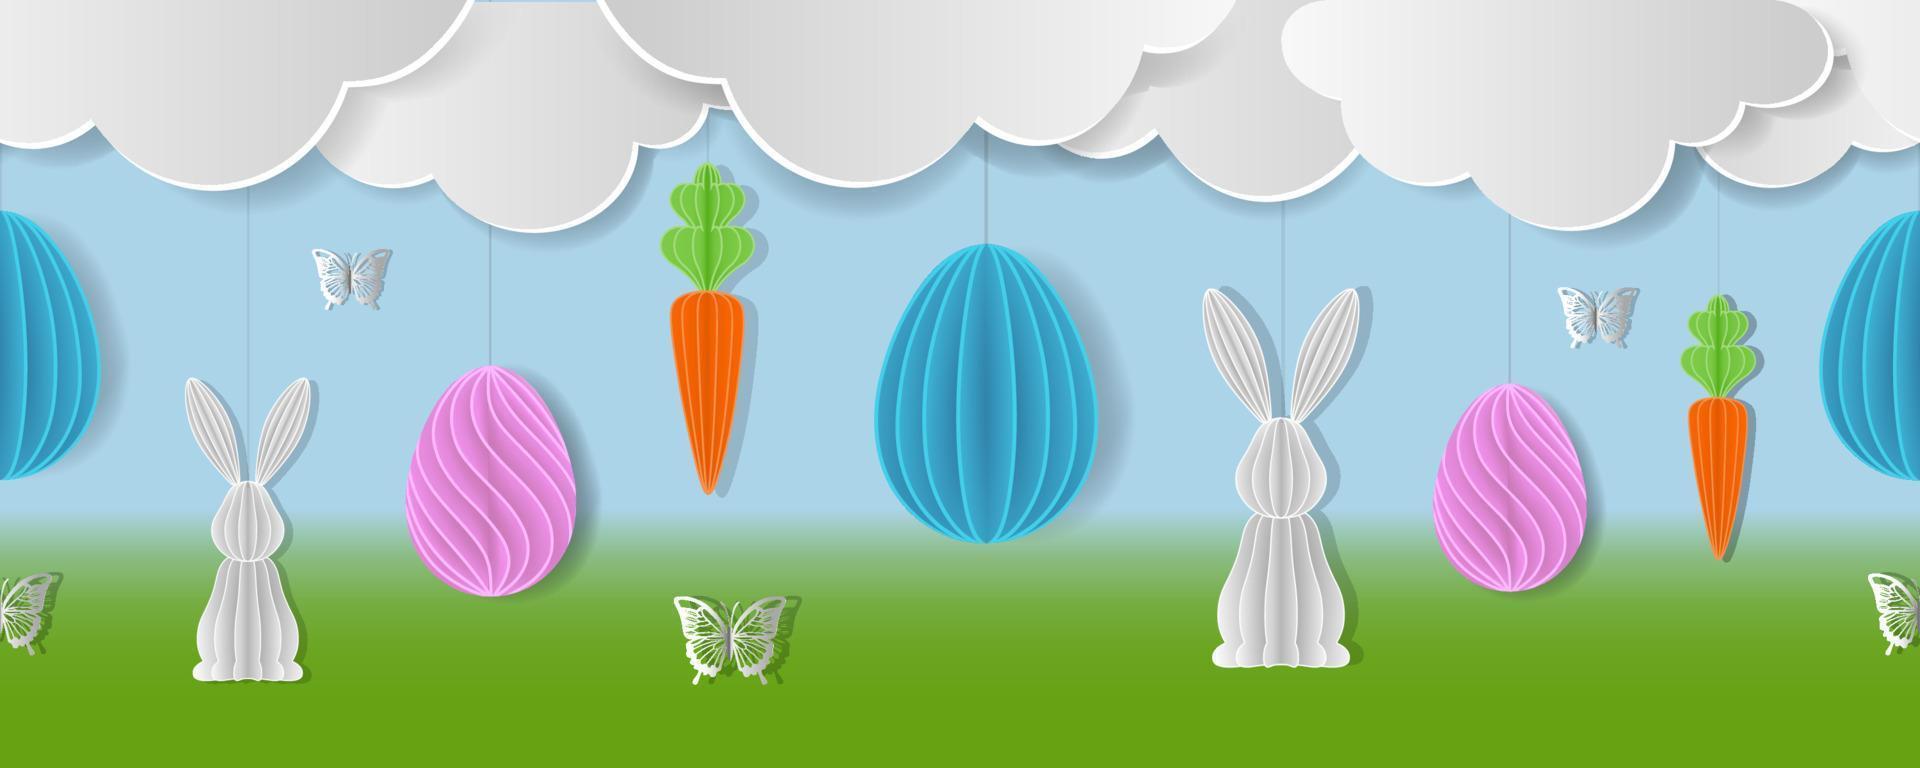 banner de páscoa sem costura com ovos de papel cenouras coelhos e borboletas vetor